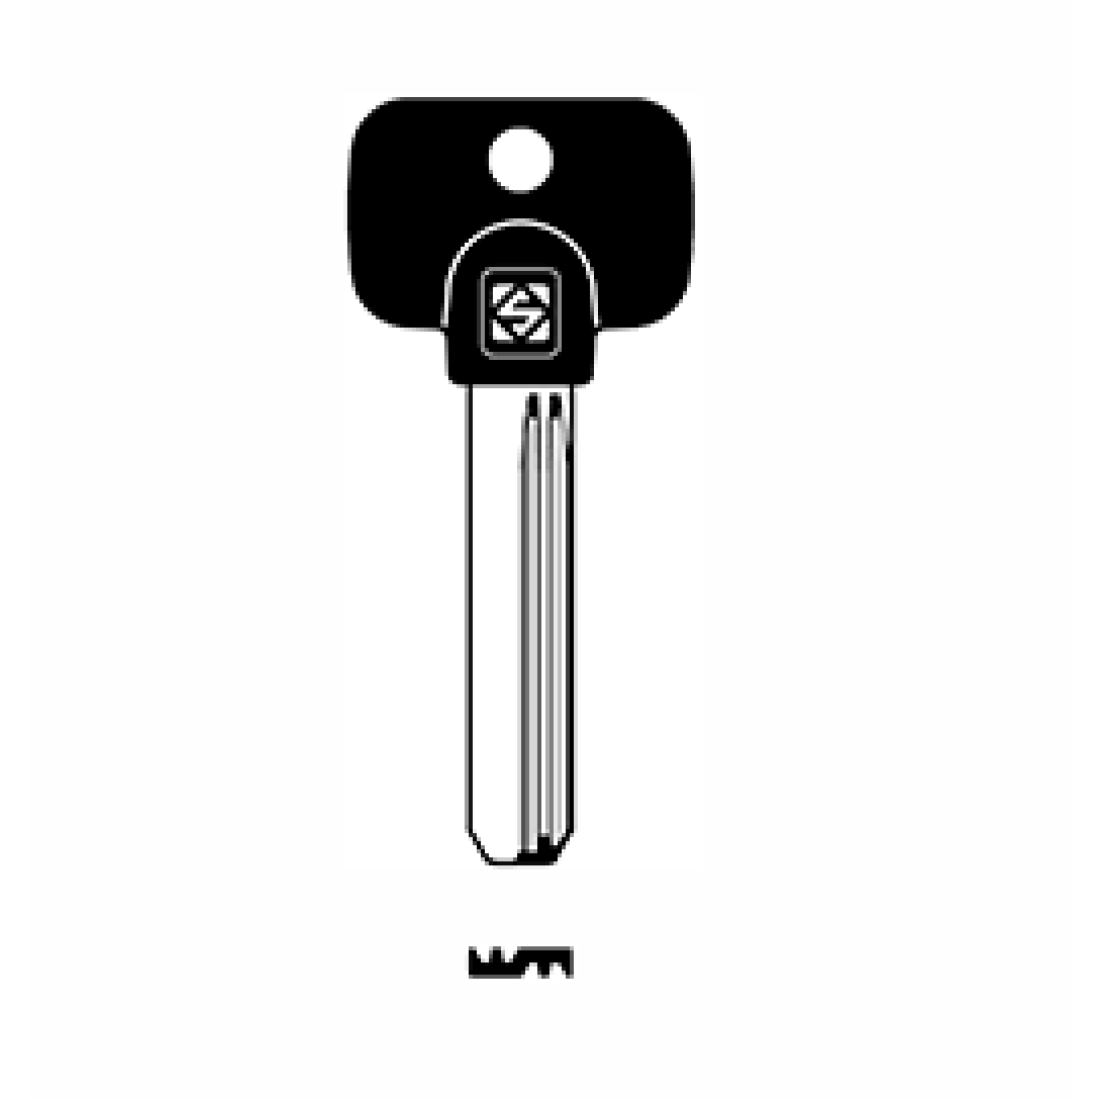 Вертикальный ключ. Mtk13rap заготовка. Hammer mtk25 кнопка. Profile key